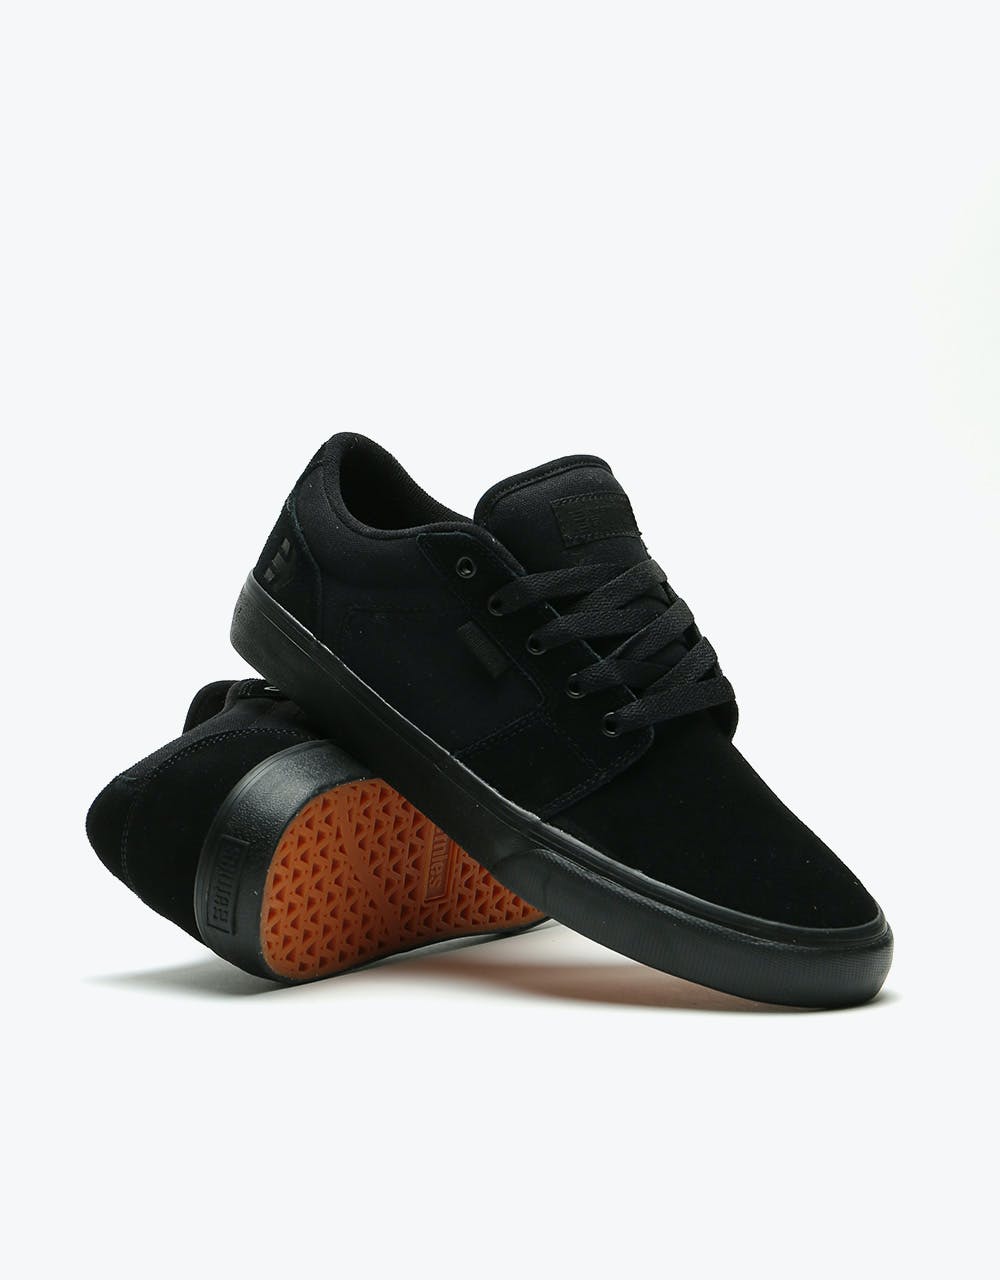 Etnies Barge LS Skate Shoes - Black/Black/Black